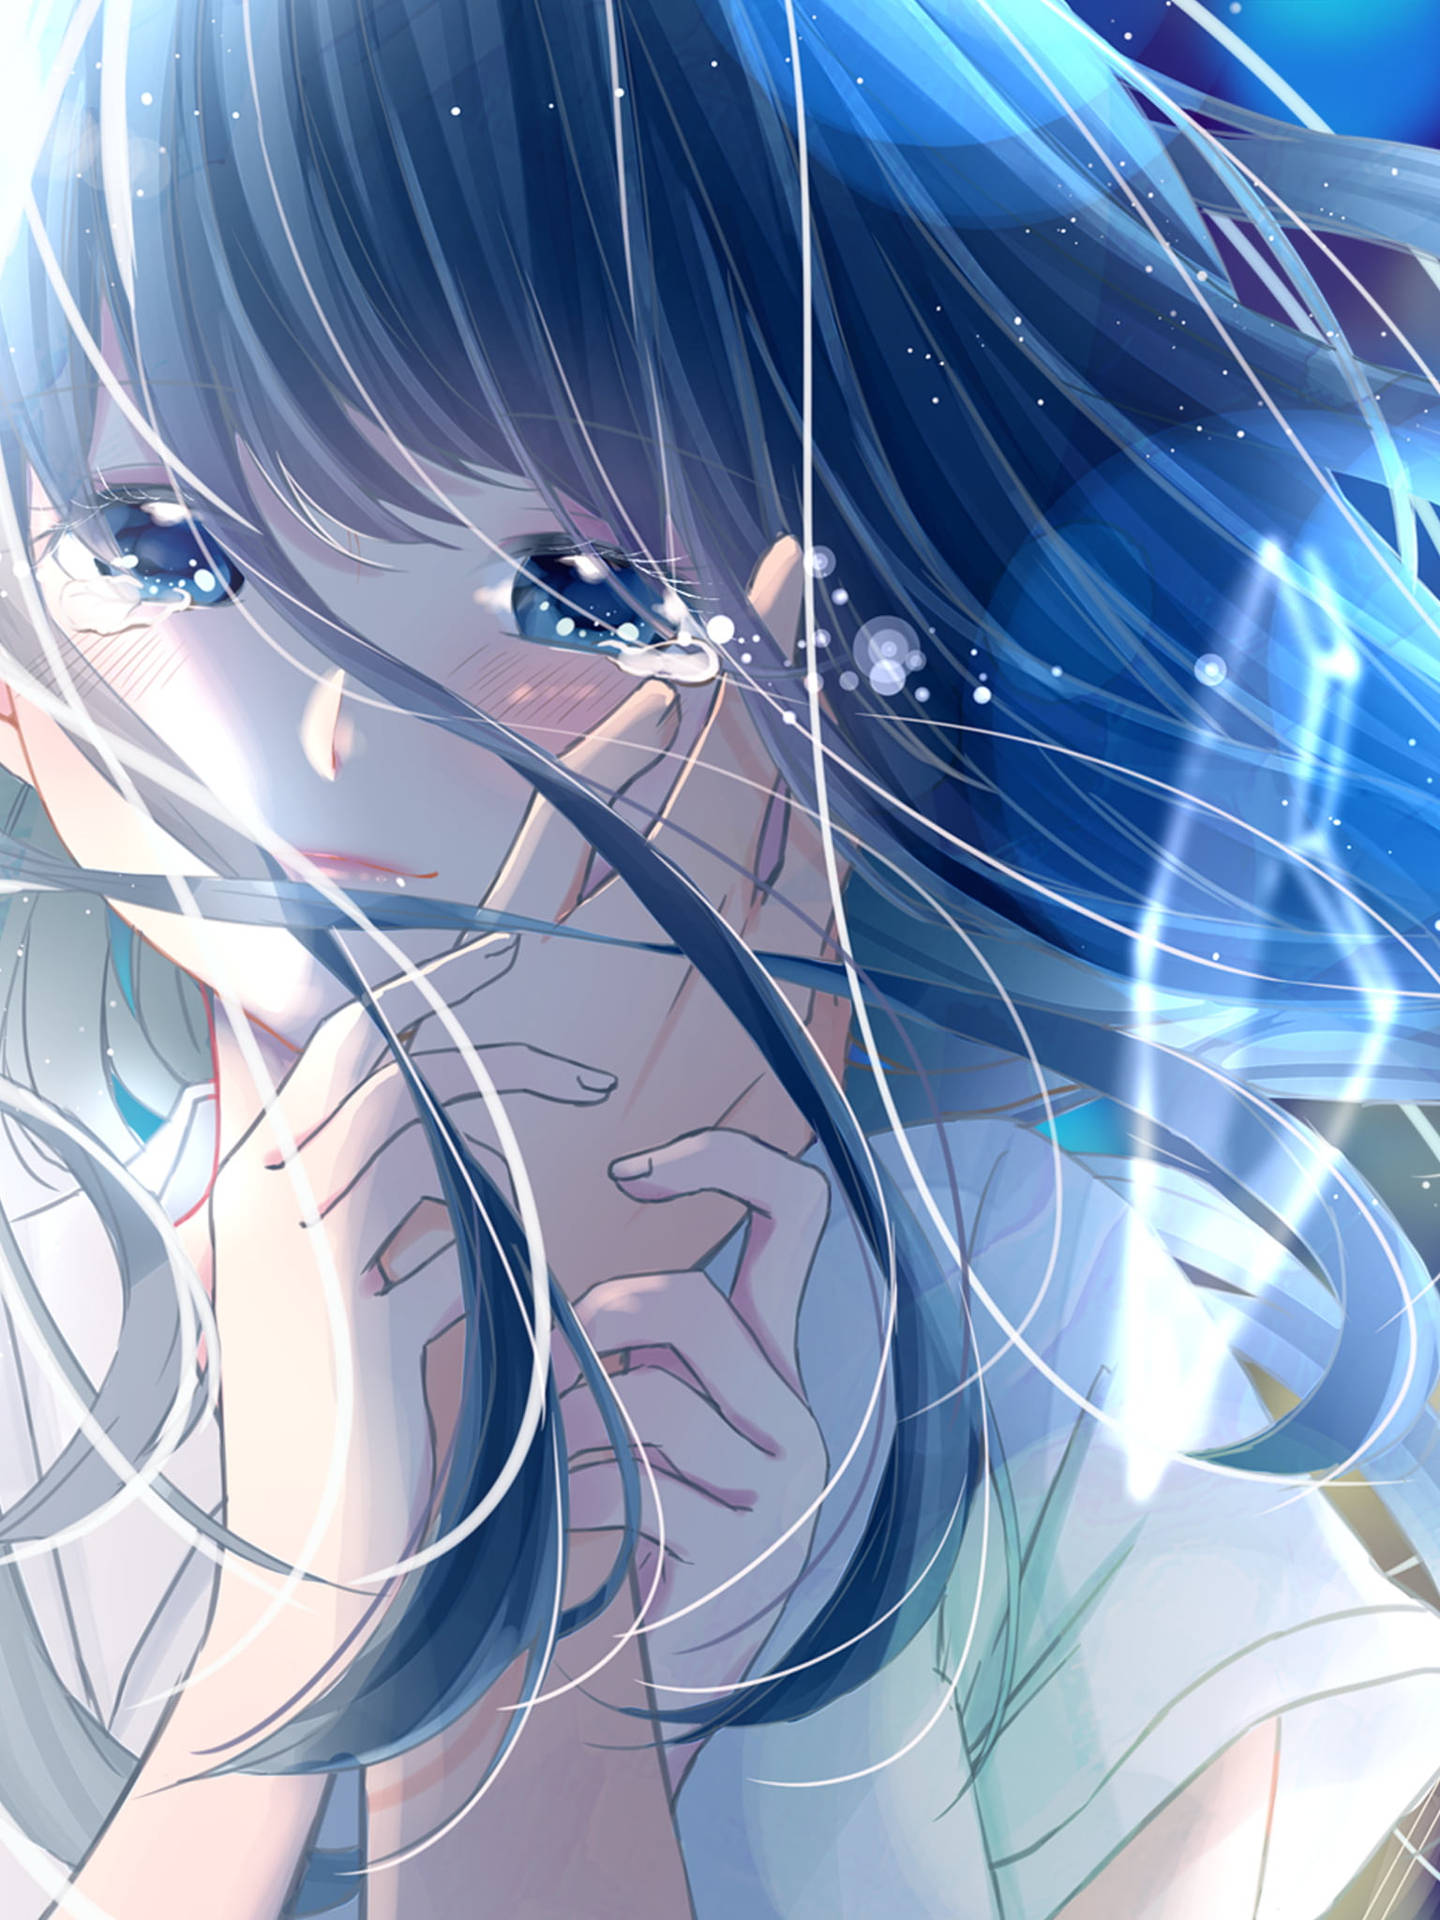 Sad Aesthetic Anime Girl Blue Tears Wallpaper